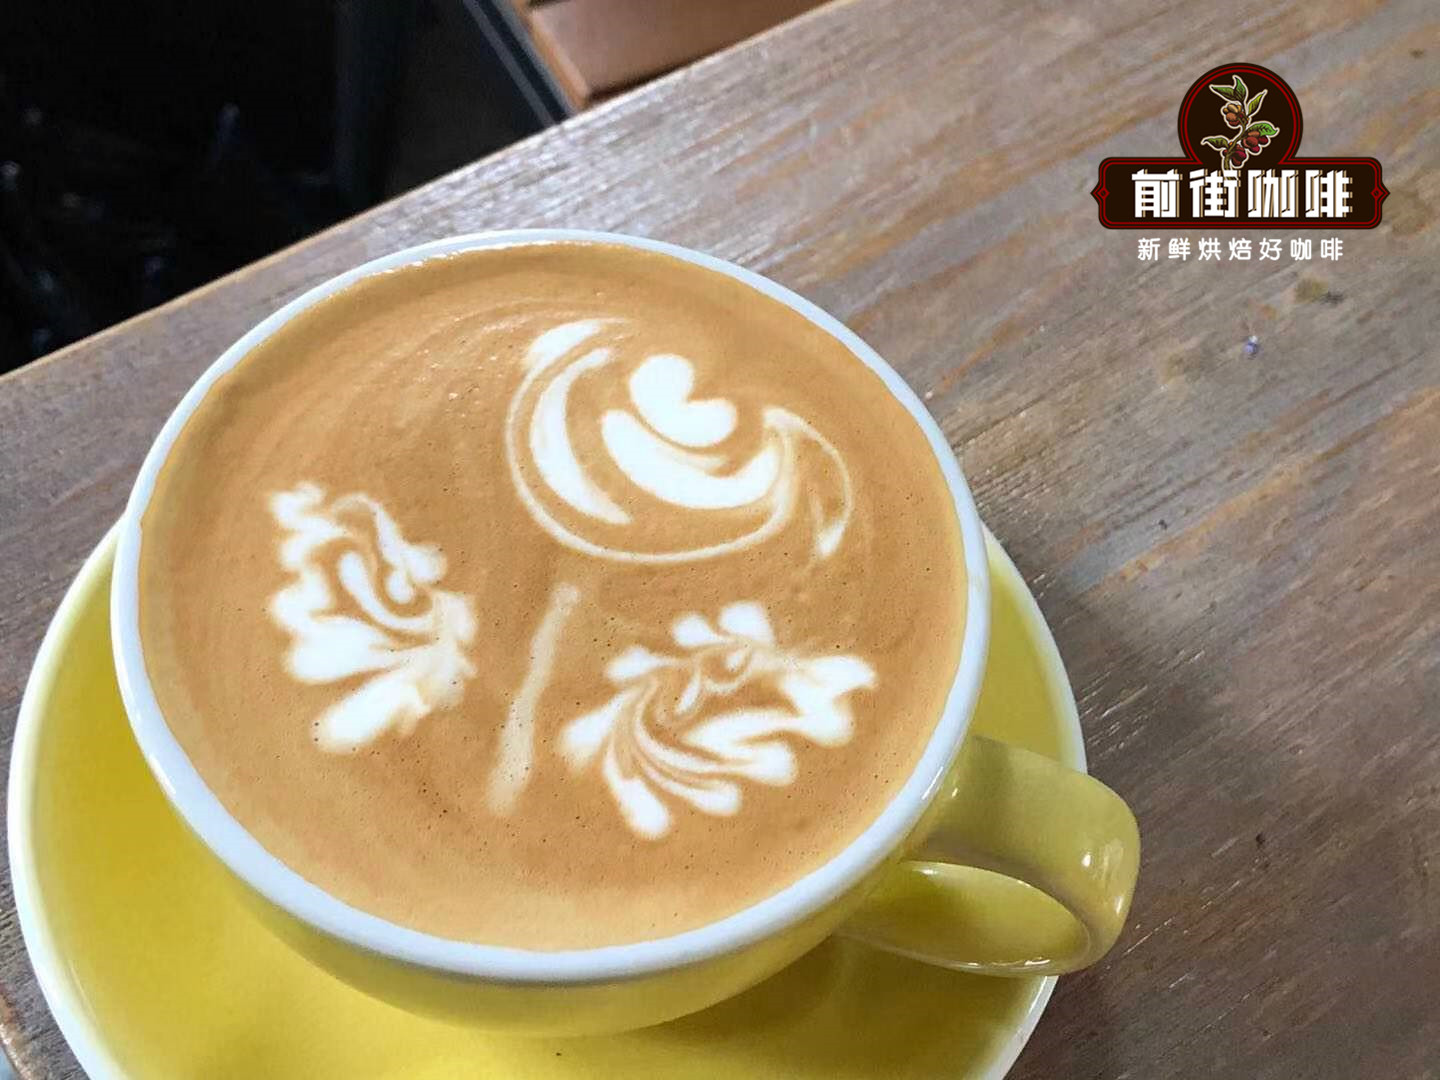 星巴克雲南咖啡故事 雲南小粒可以做拿鐵和卡布奇諾咖啡嗎